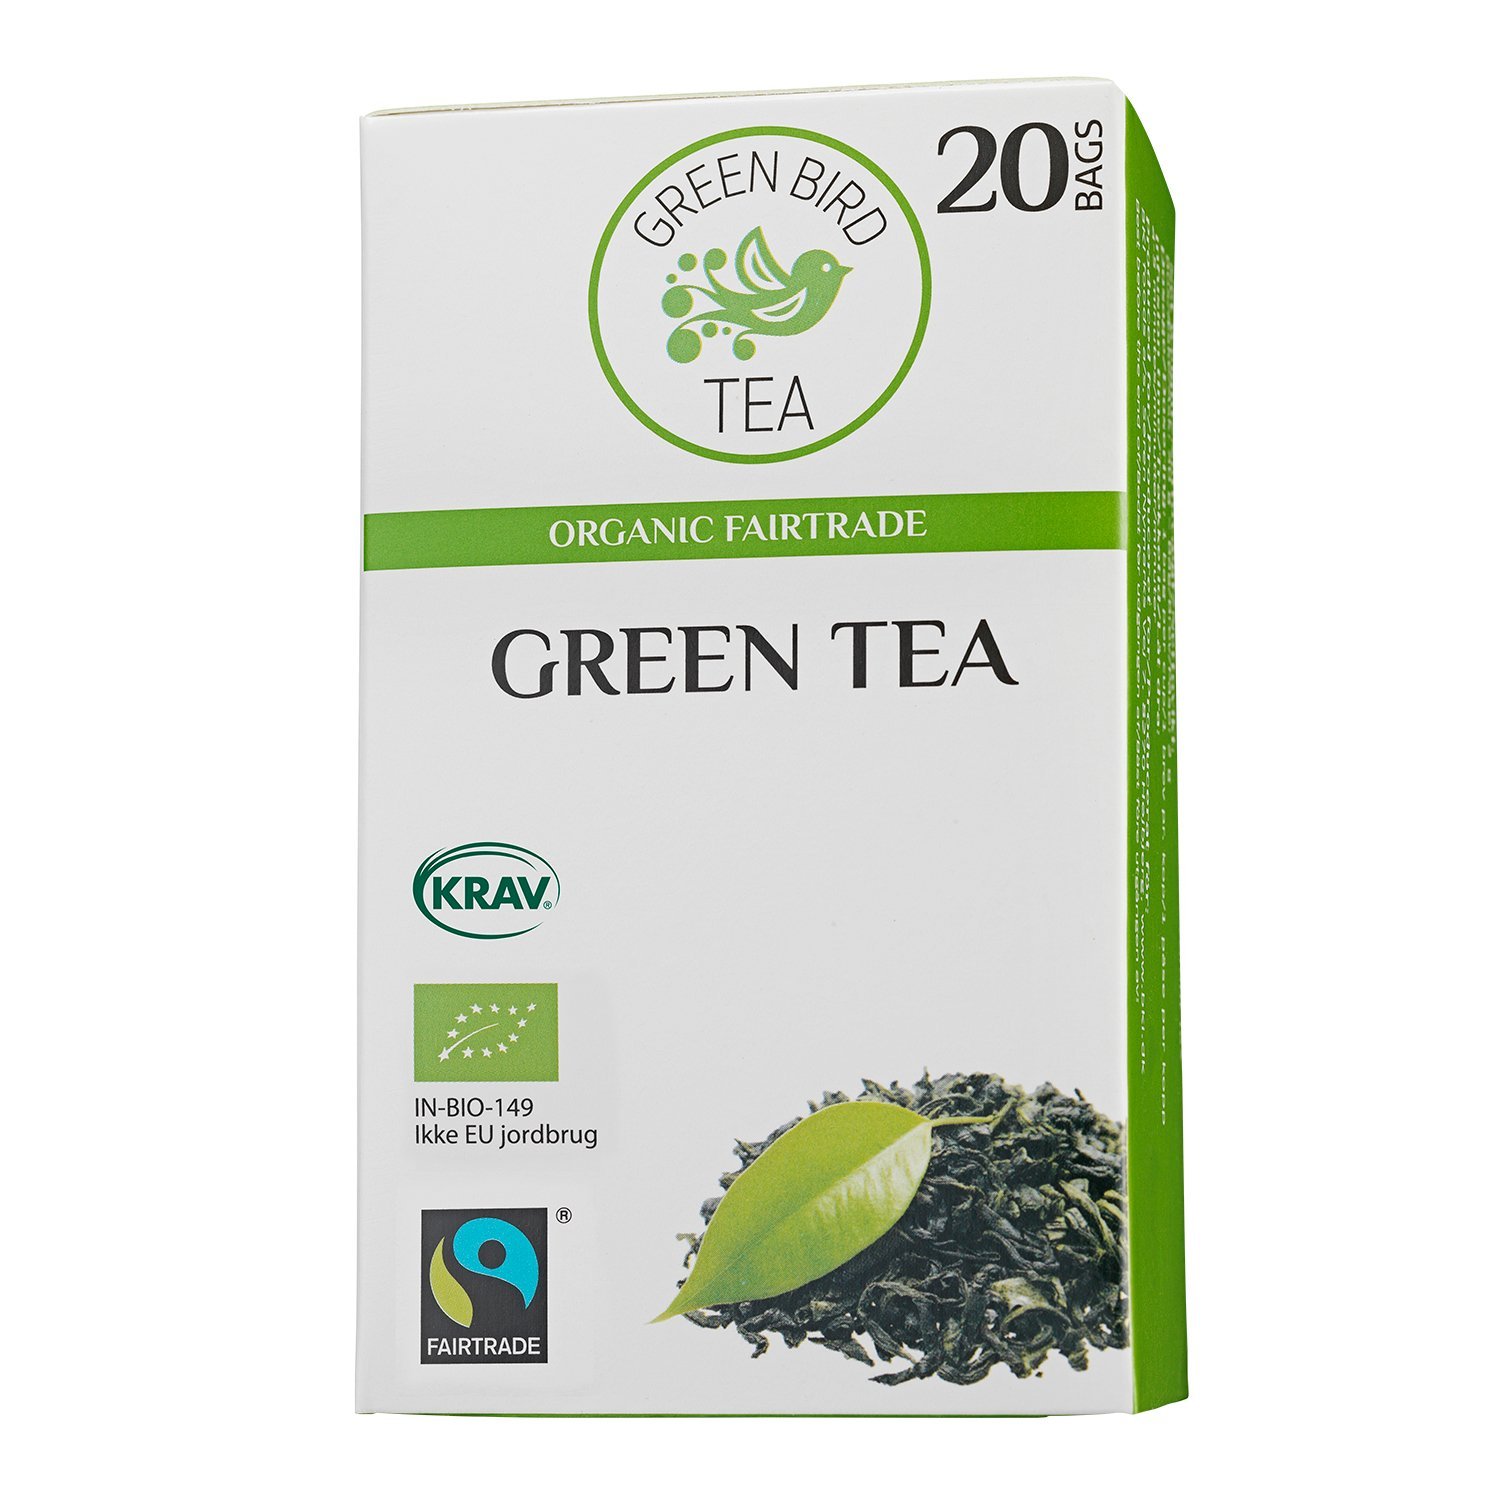 Green Bird Økologisk Grøn te 20 stk Grøn